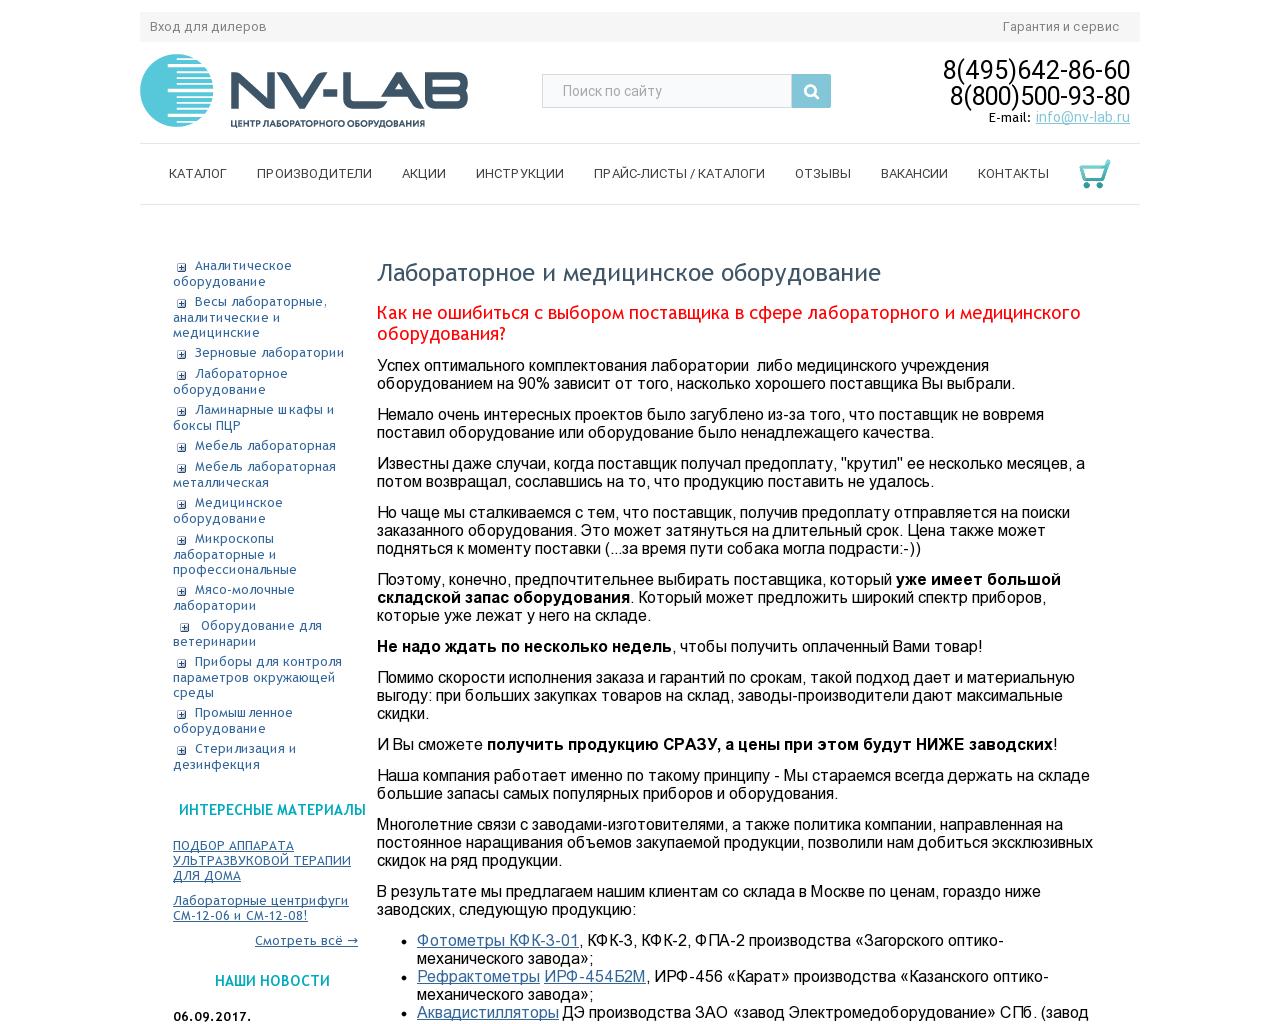 Изображение сайта nv-lab.ru в разрешении 1280x1024